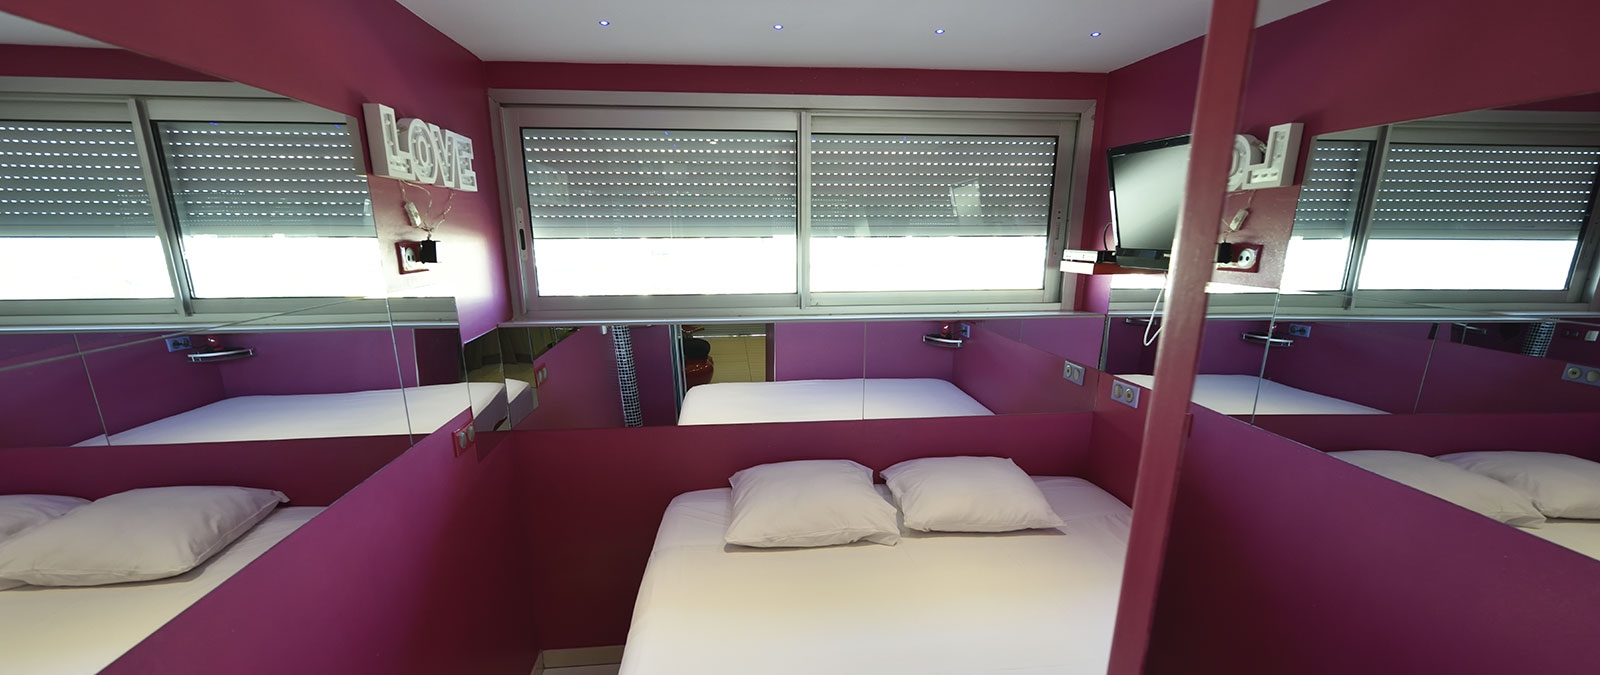 Dormitorio con cama doble en 180 estudio naturista de alquiler Amour Fou